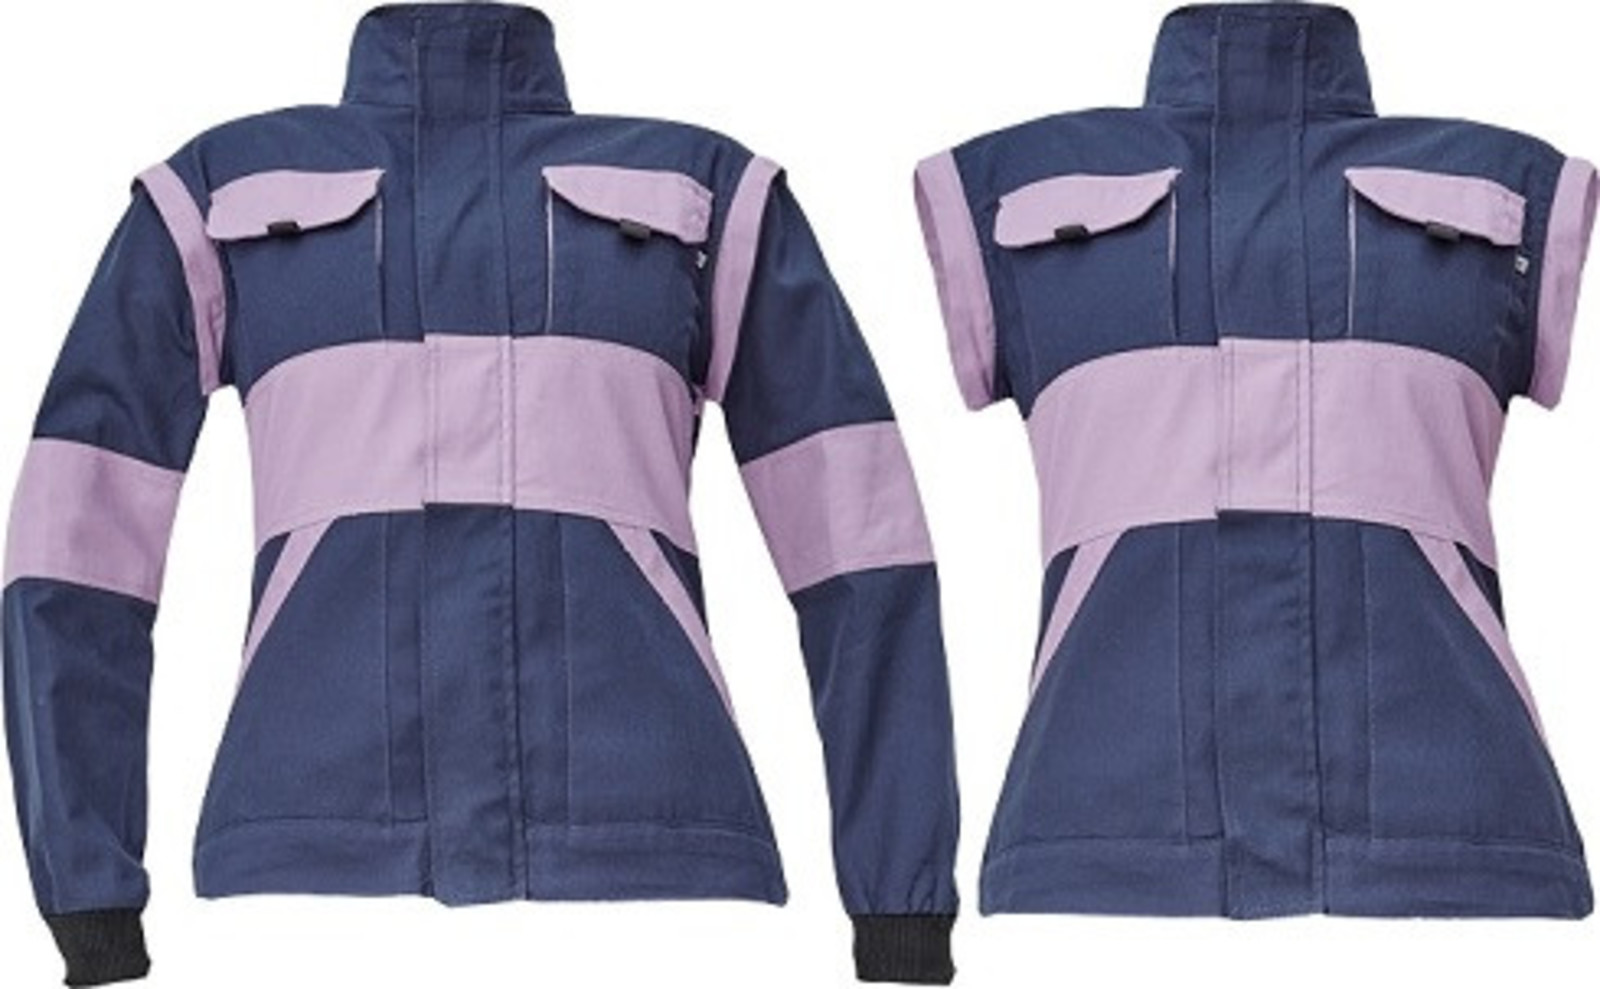 Dámska bavlnená montérková bunda Cerva Max Neo Lady 2v1 - veľkosť: 50, farba: navy lila